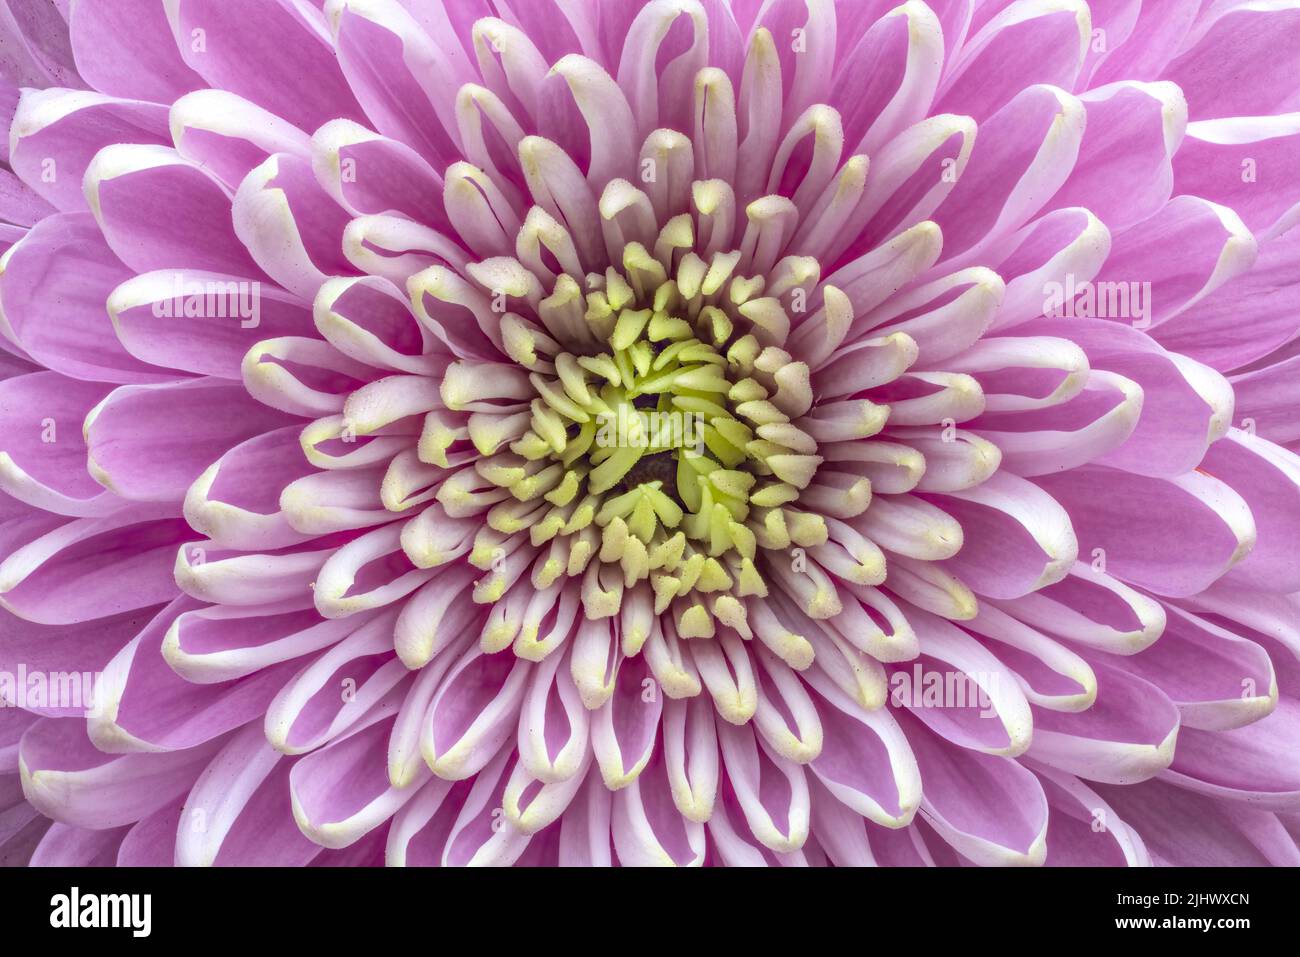 Gros plan sur les pétales d'une belle fleur rose de Chrysanthemum montrant la symétrie presque parfaite Banque D'Images